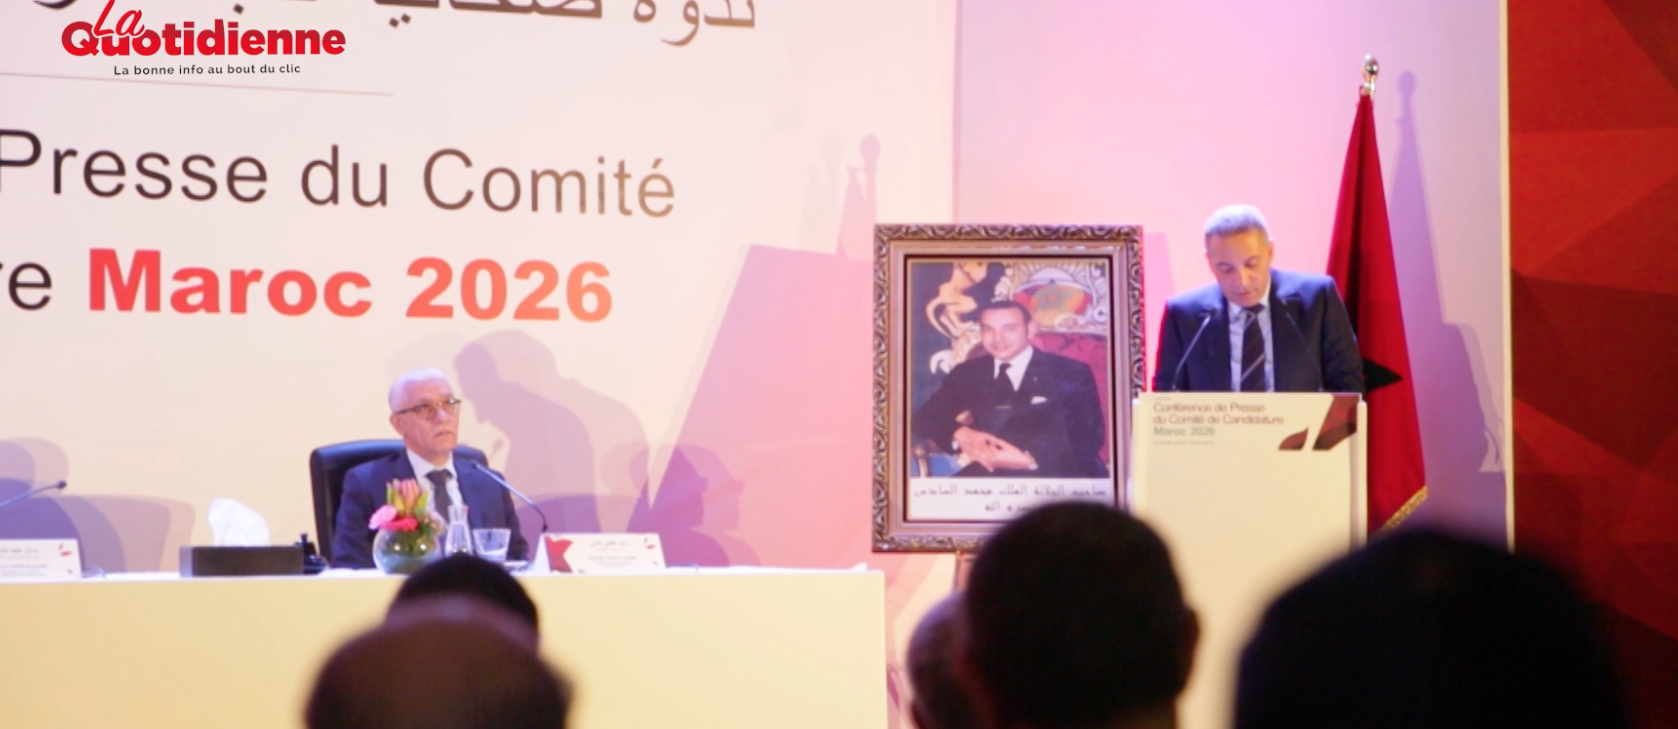 Mondial 2026 : Le Maroc va mobiliser entre 120 et 130 MDH pour bétonner son dossier